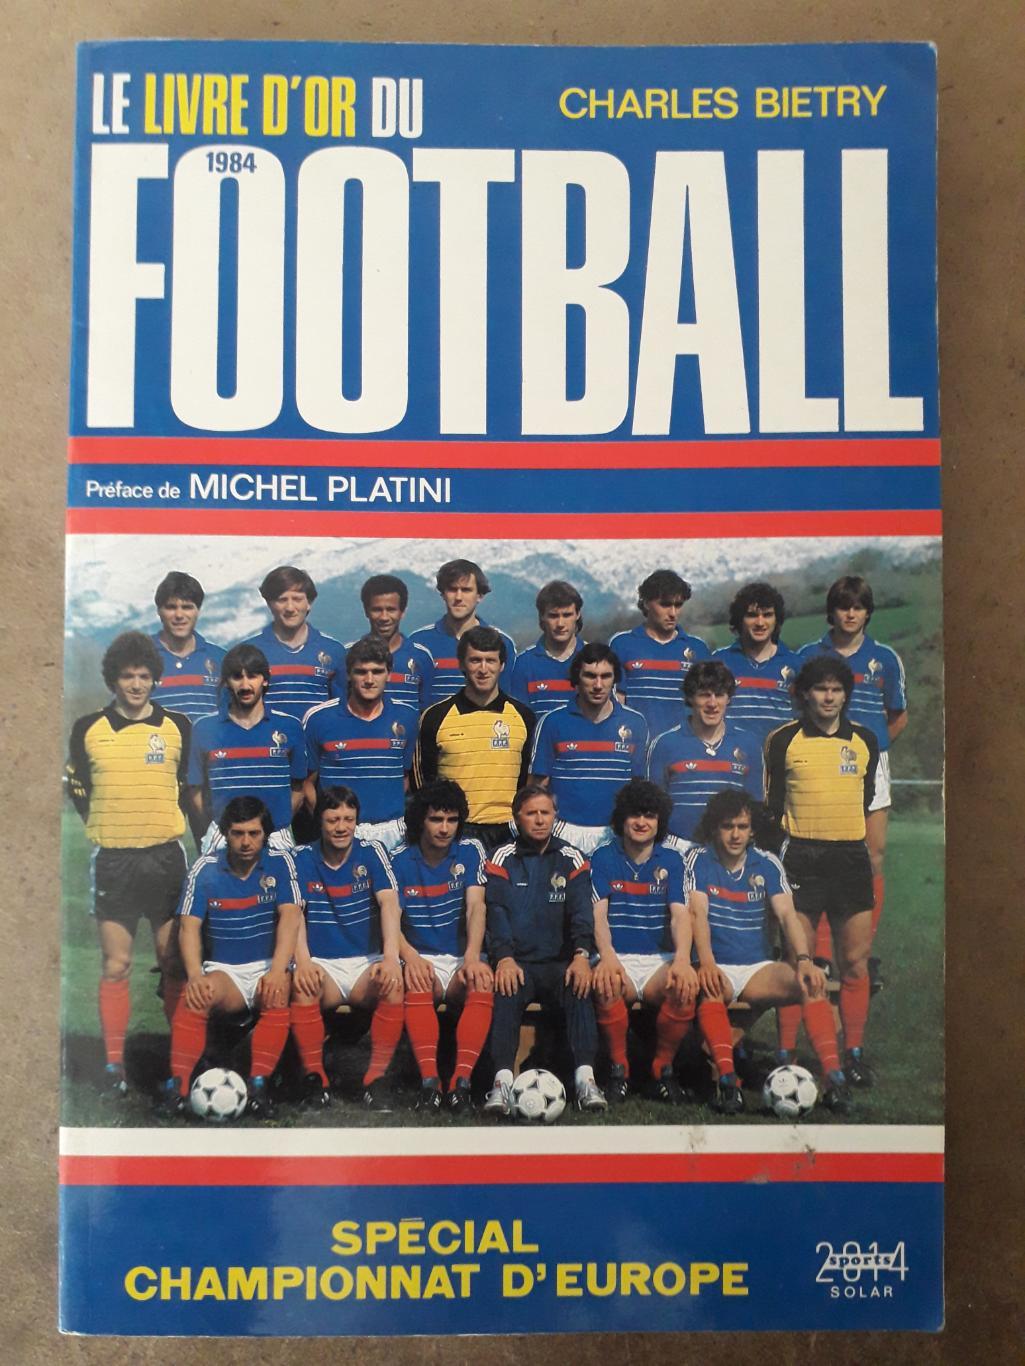 Le livre d'or du football 1984